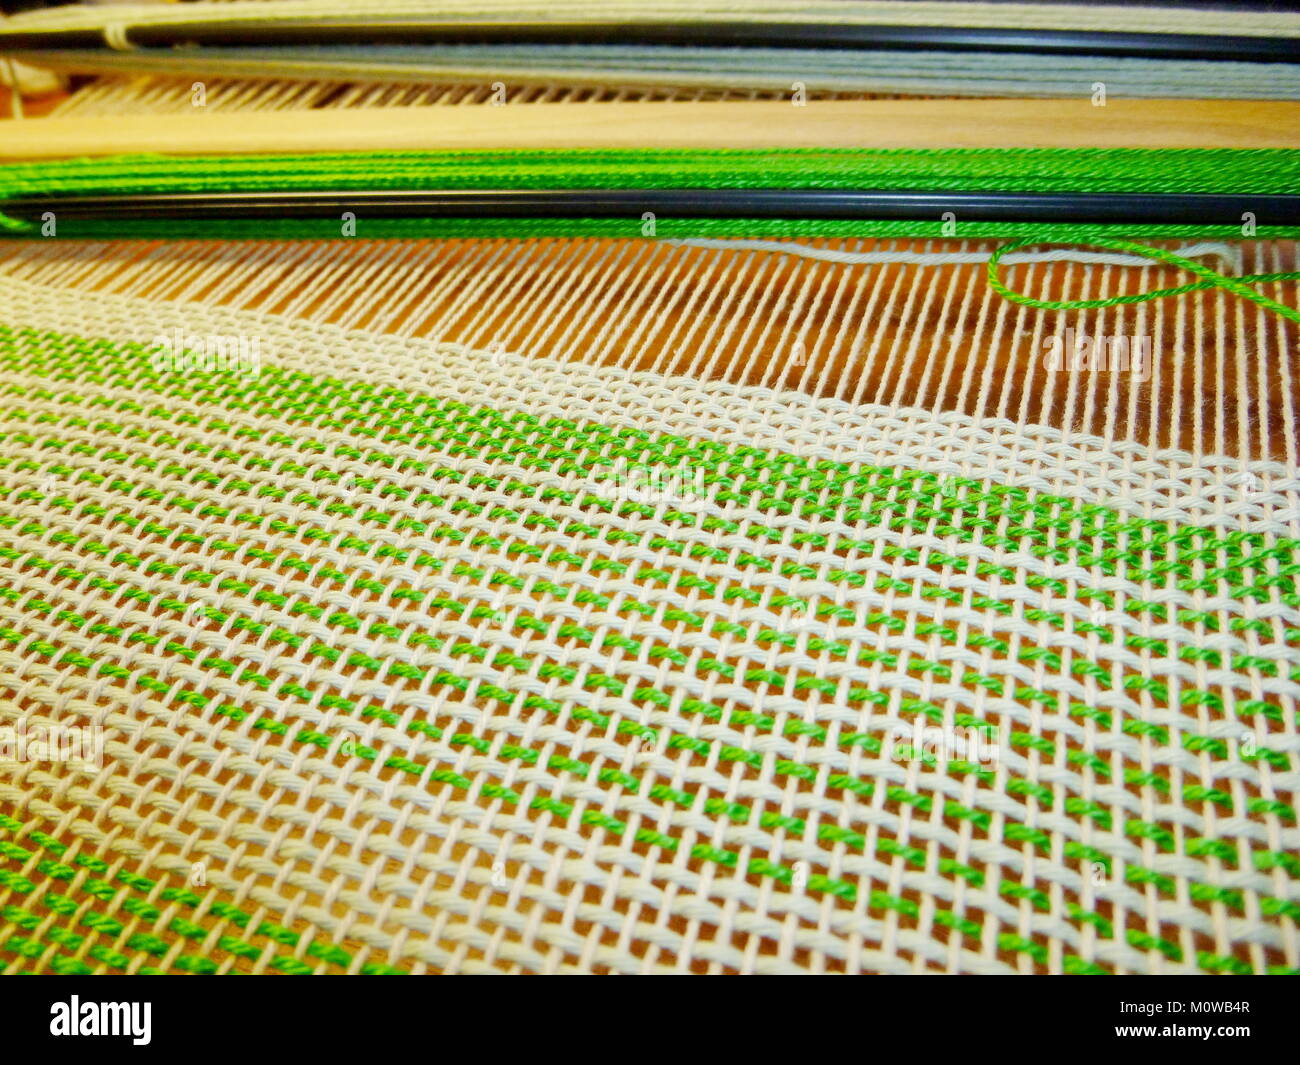 Das Weben der Stoff in den Prozess. Verflechtung von Threads. Handarbeit,  Kunsthandwerk, Handwerk Stockfotografie - Alamy